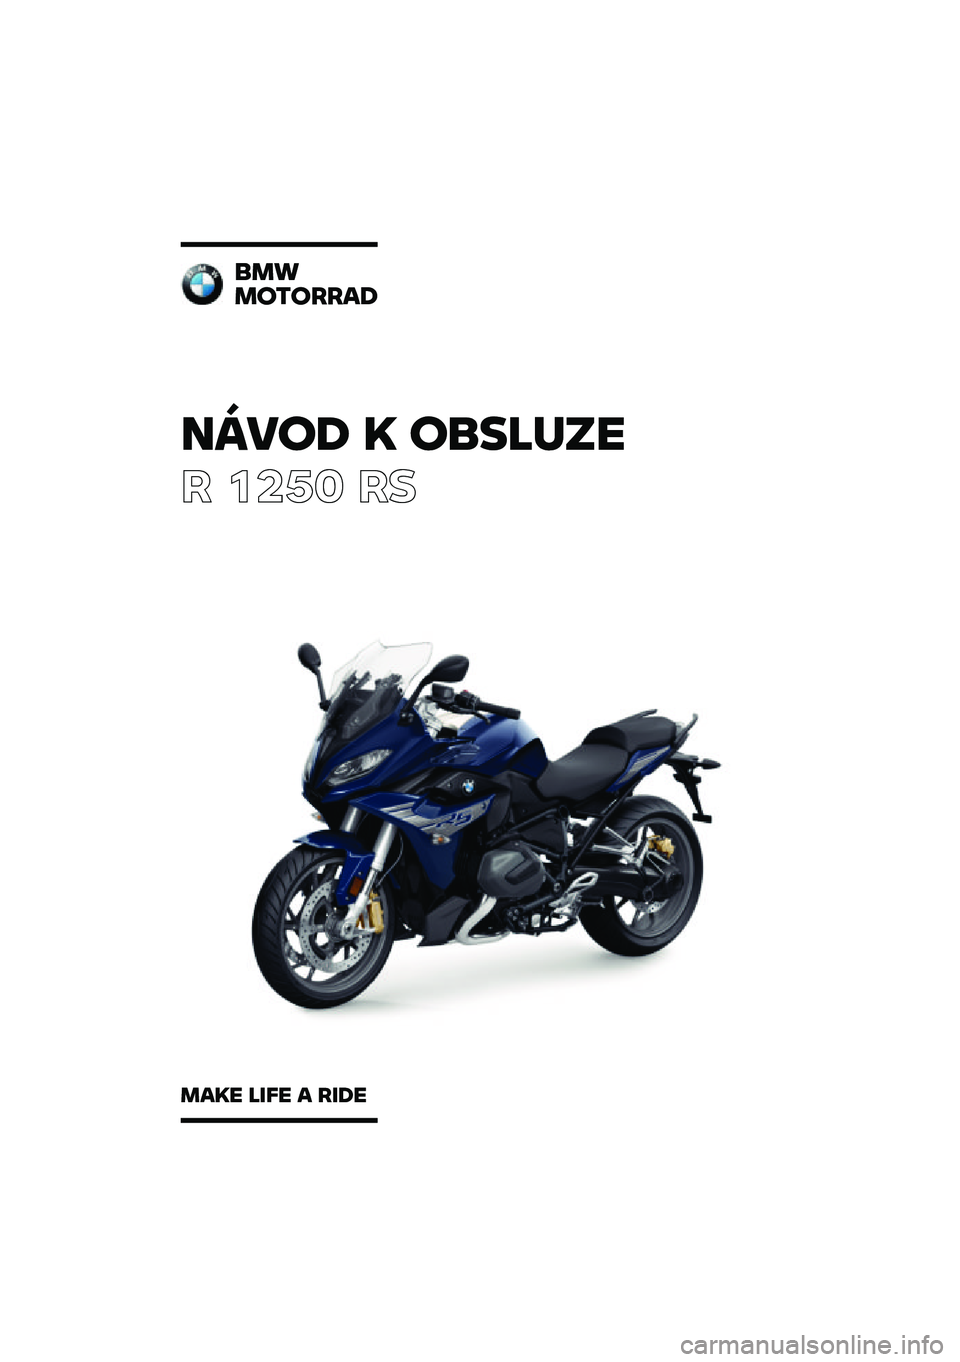 BMW MOTORRAD R 1250 RS 2020  Návod k obsluze (in Czech) �����\b �	 ��
��\f�
��
� ����	 ��
�
��
��������\b
���	� �\f��� � ���\b� 